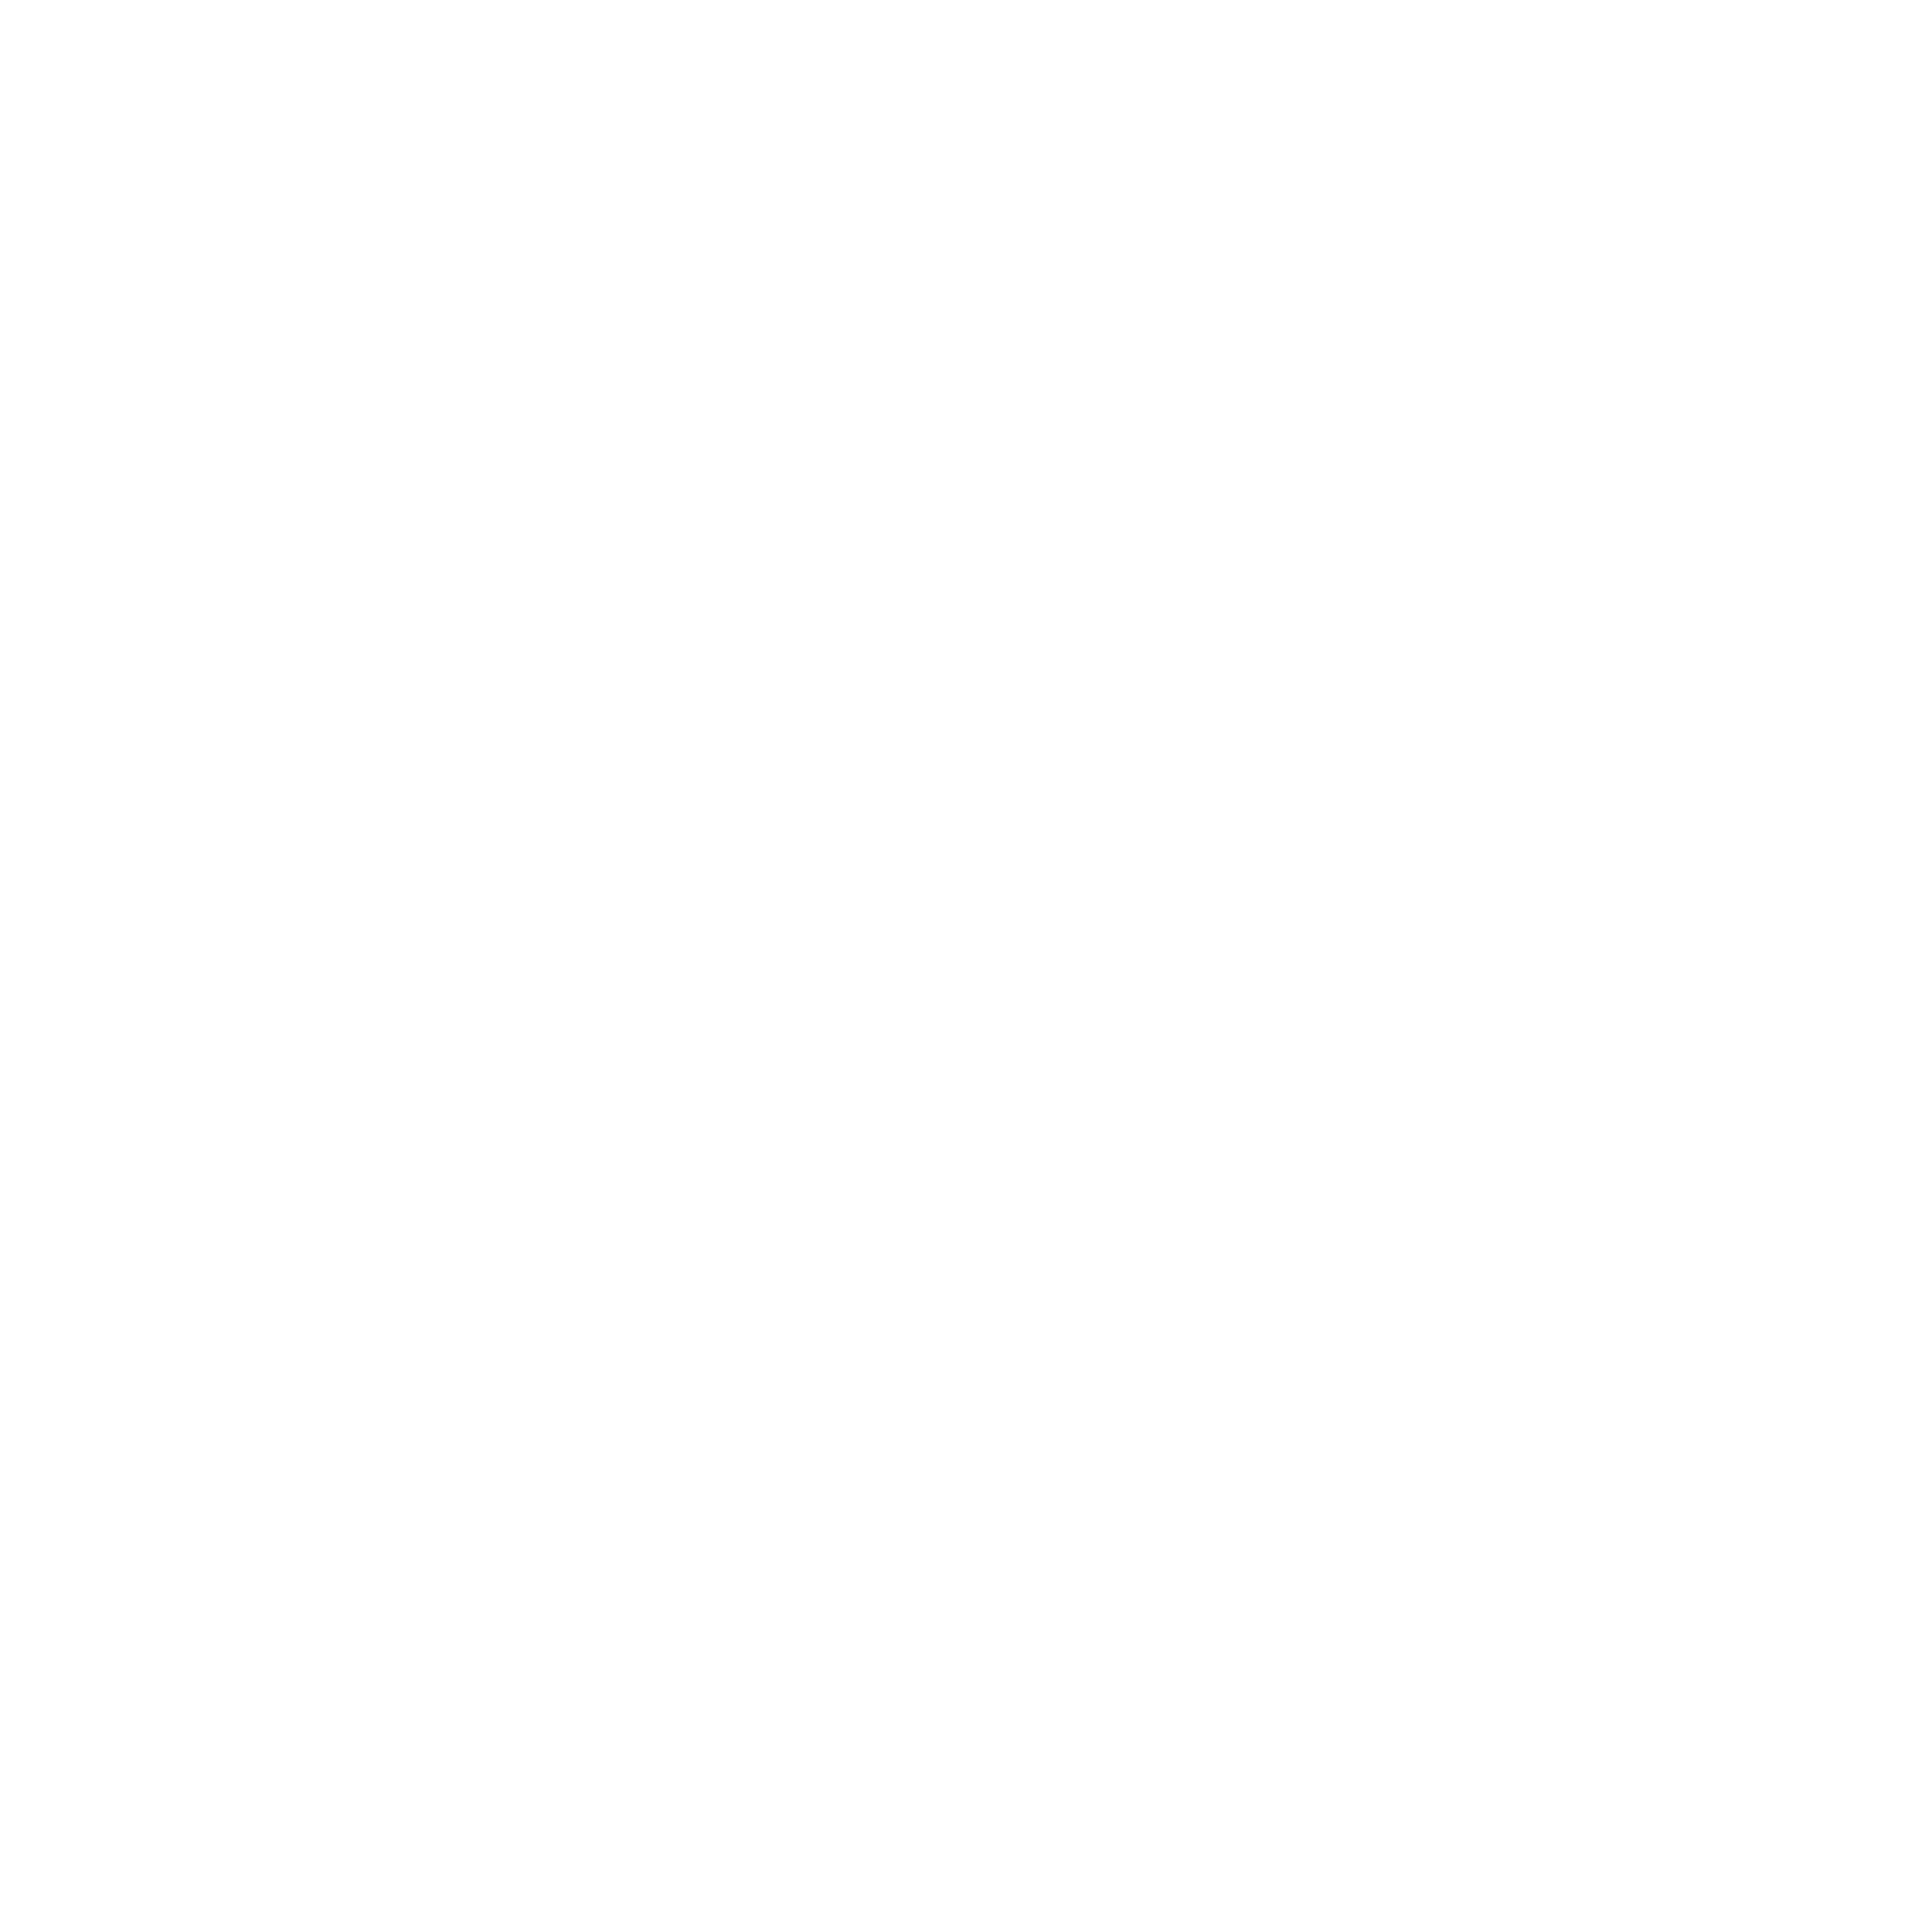 BINAURAL DREAM